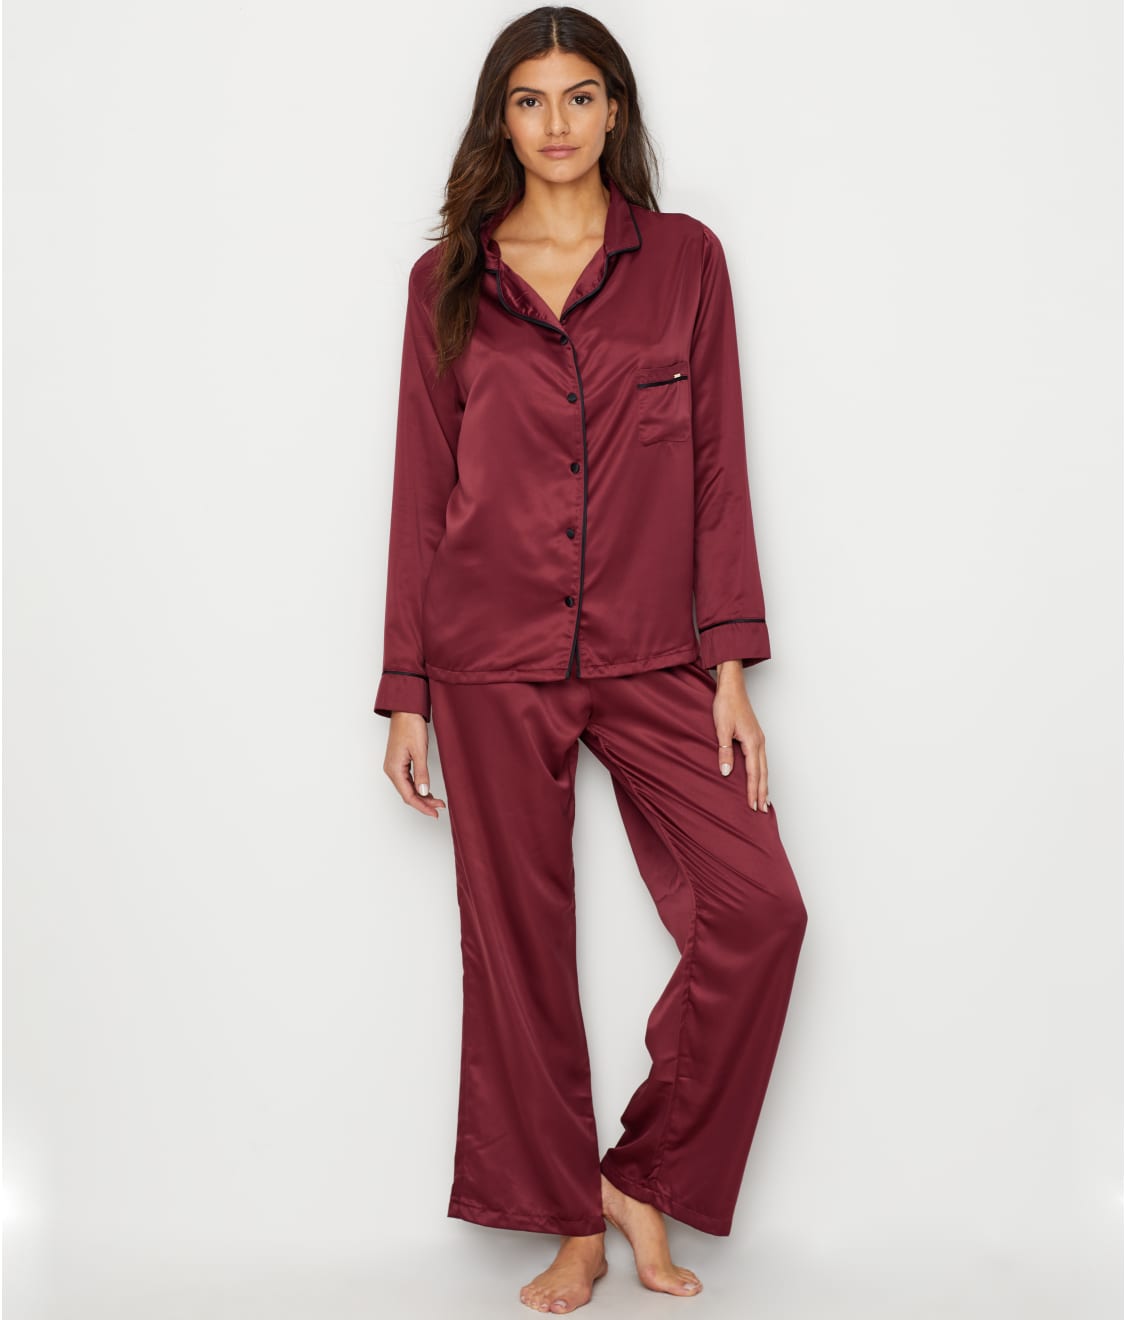 Bluebella Claudia Satin Pajama Set & Reviews | Bare Necessities (Style ...